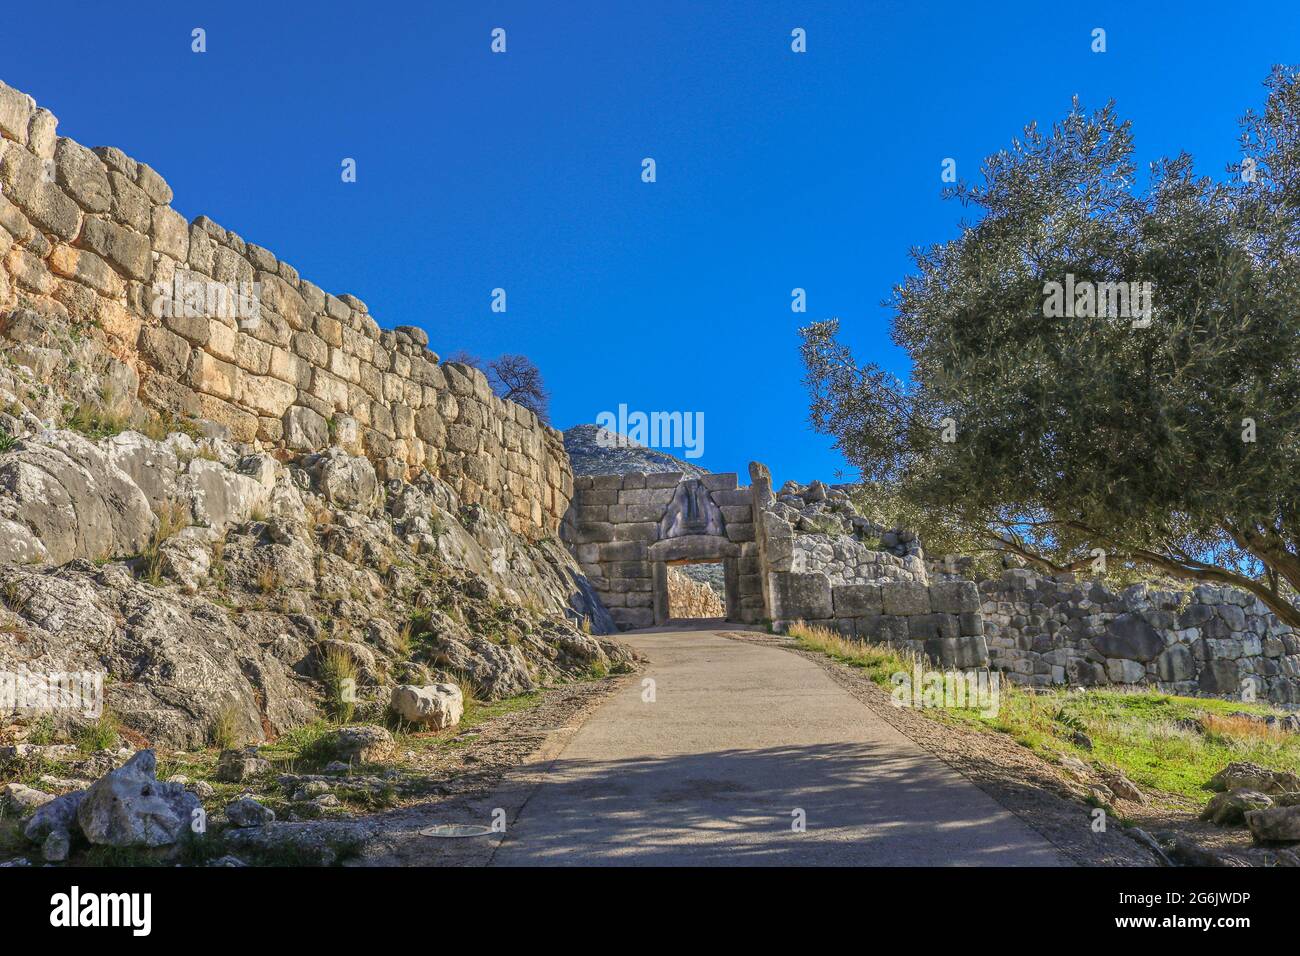 Vista della porta dei Lions nell'antica Grecia di Micene dal basso della collina che mostra il marciapiede - ombreggiato da un olivo - che conduce attraverso l'apertura e l'h Foto Stock